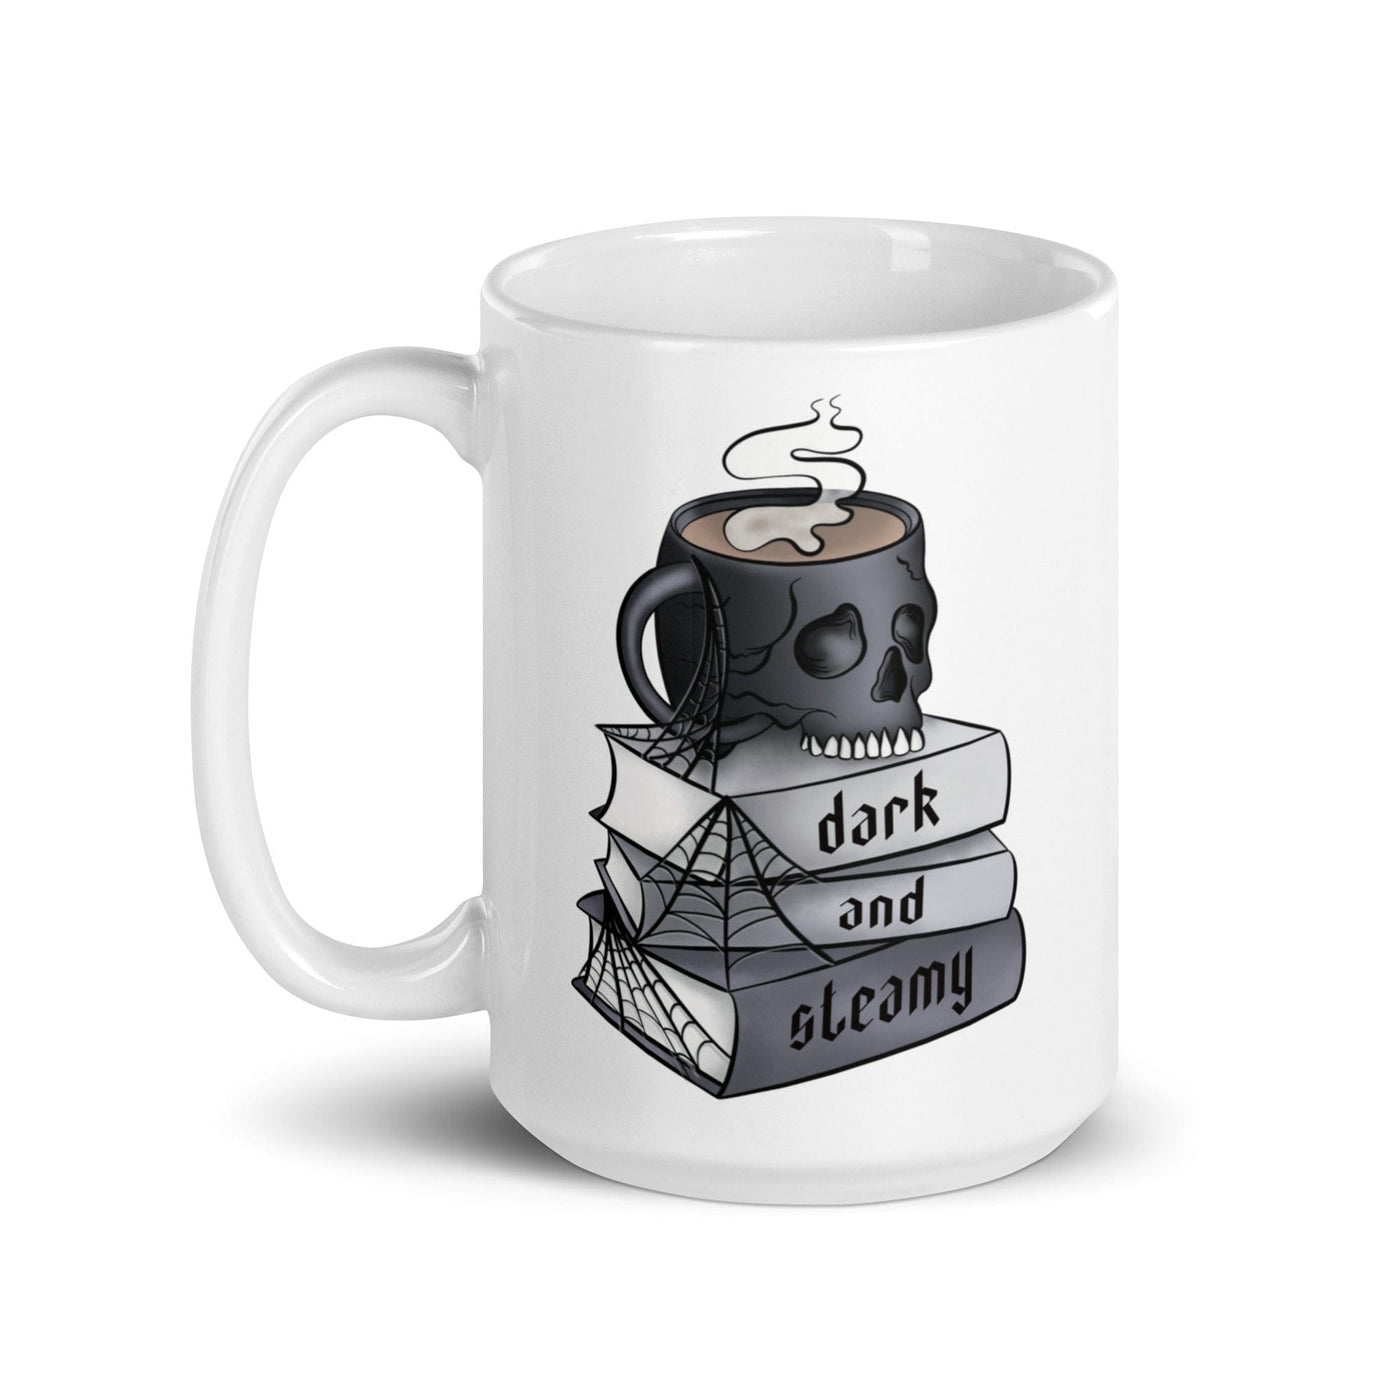 Lit Haven Booktique Dark and Steamy Mug